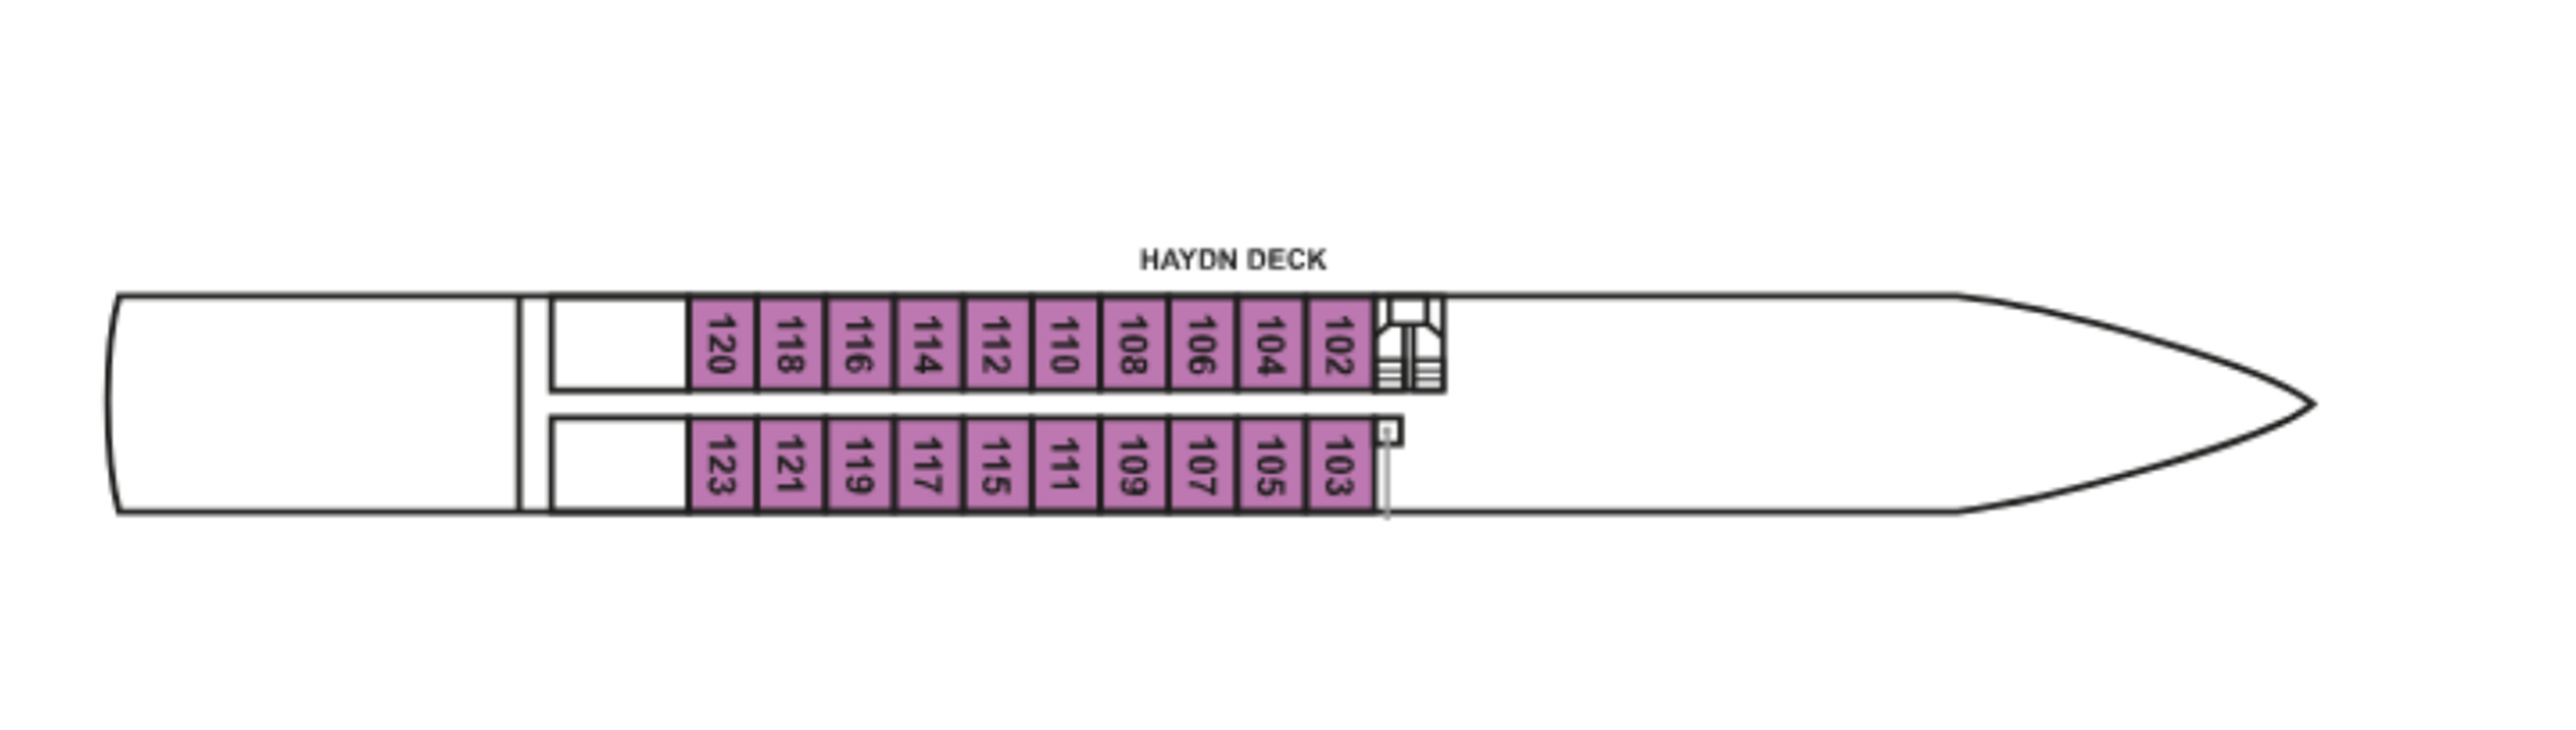 MS Dutch Symphony, Haydn Deck